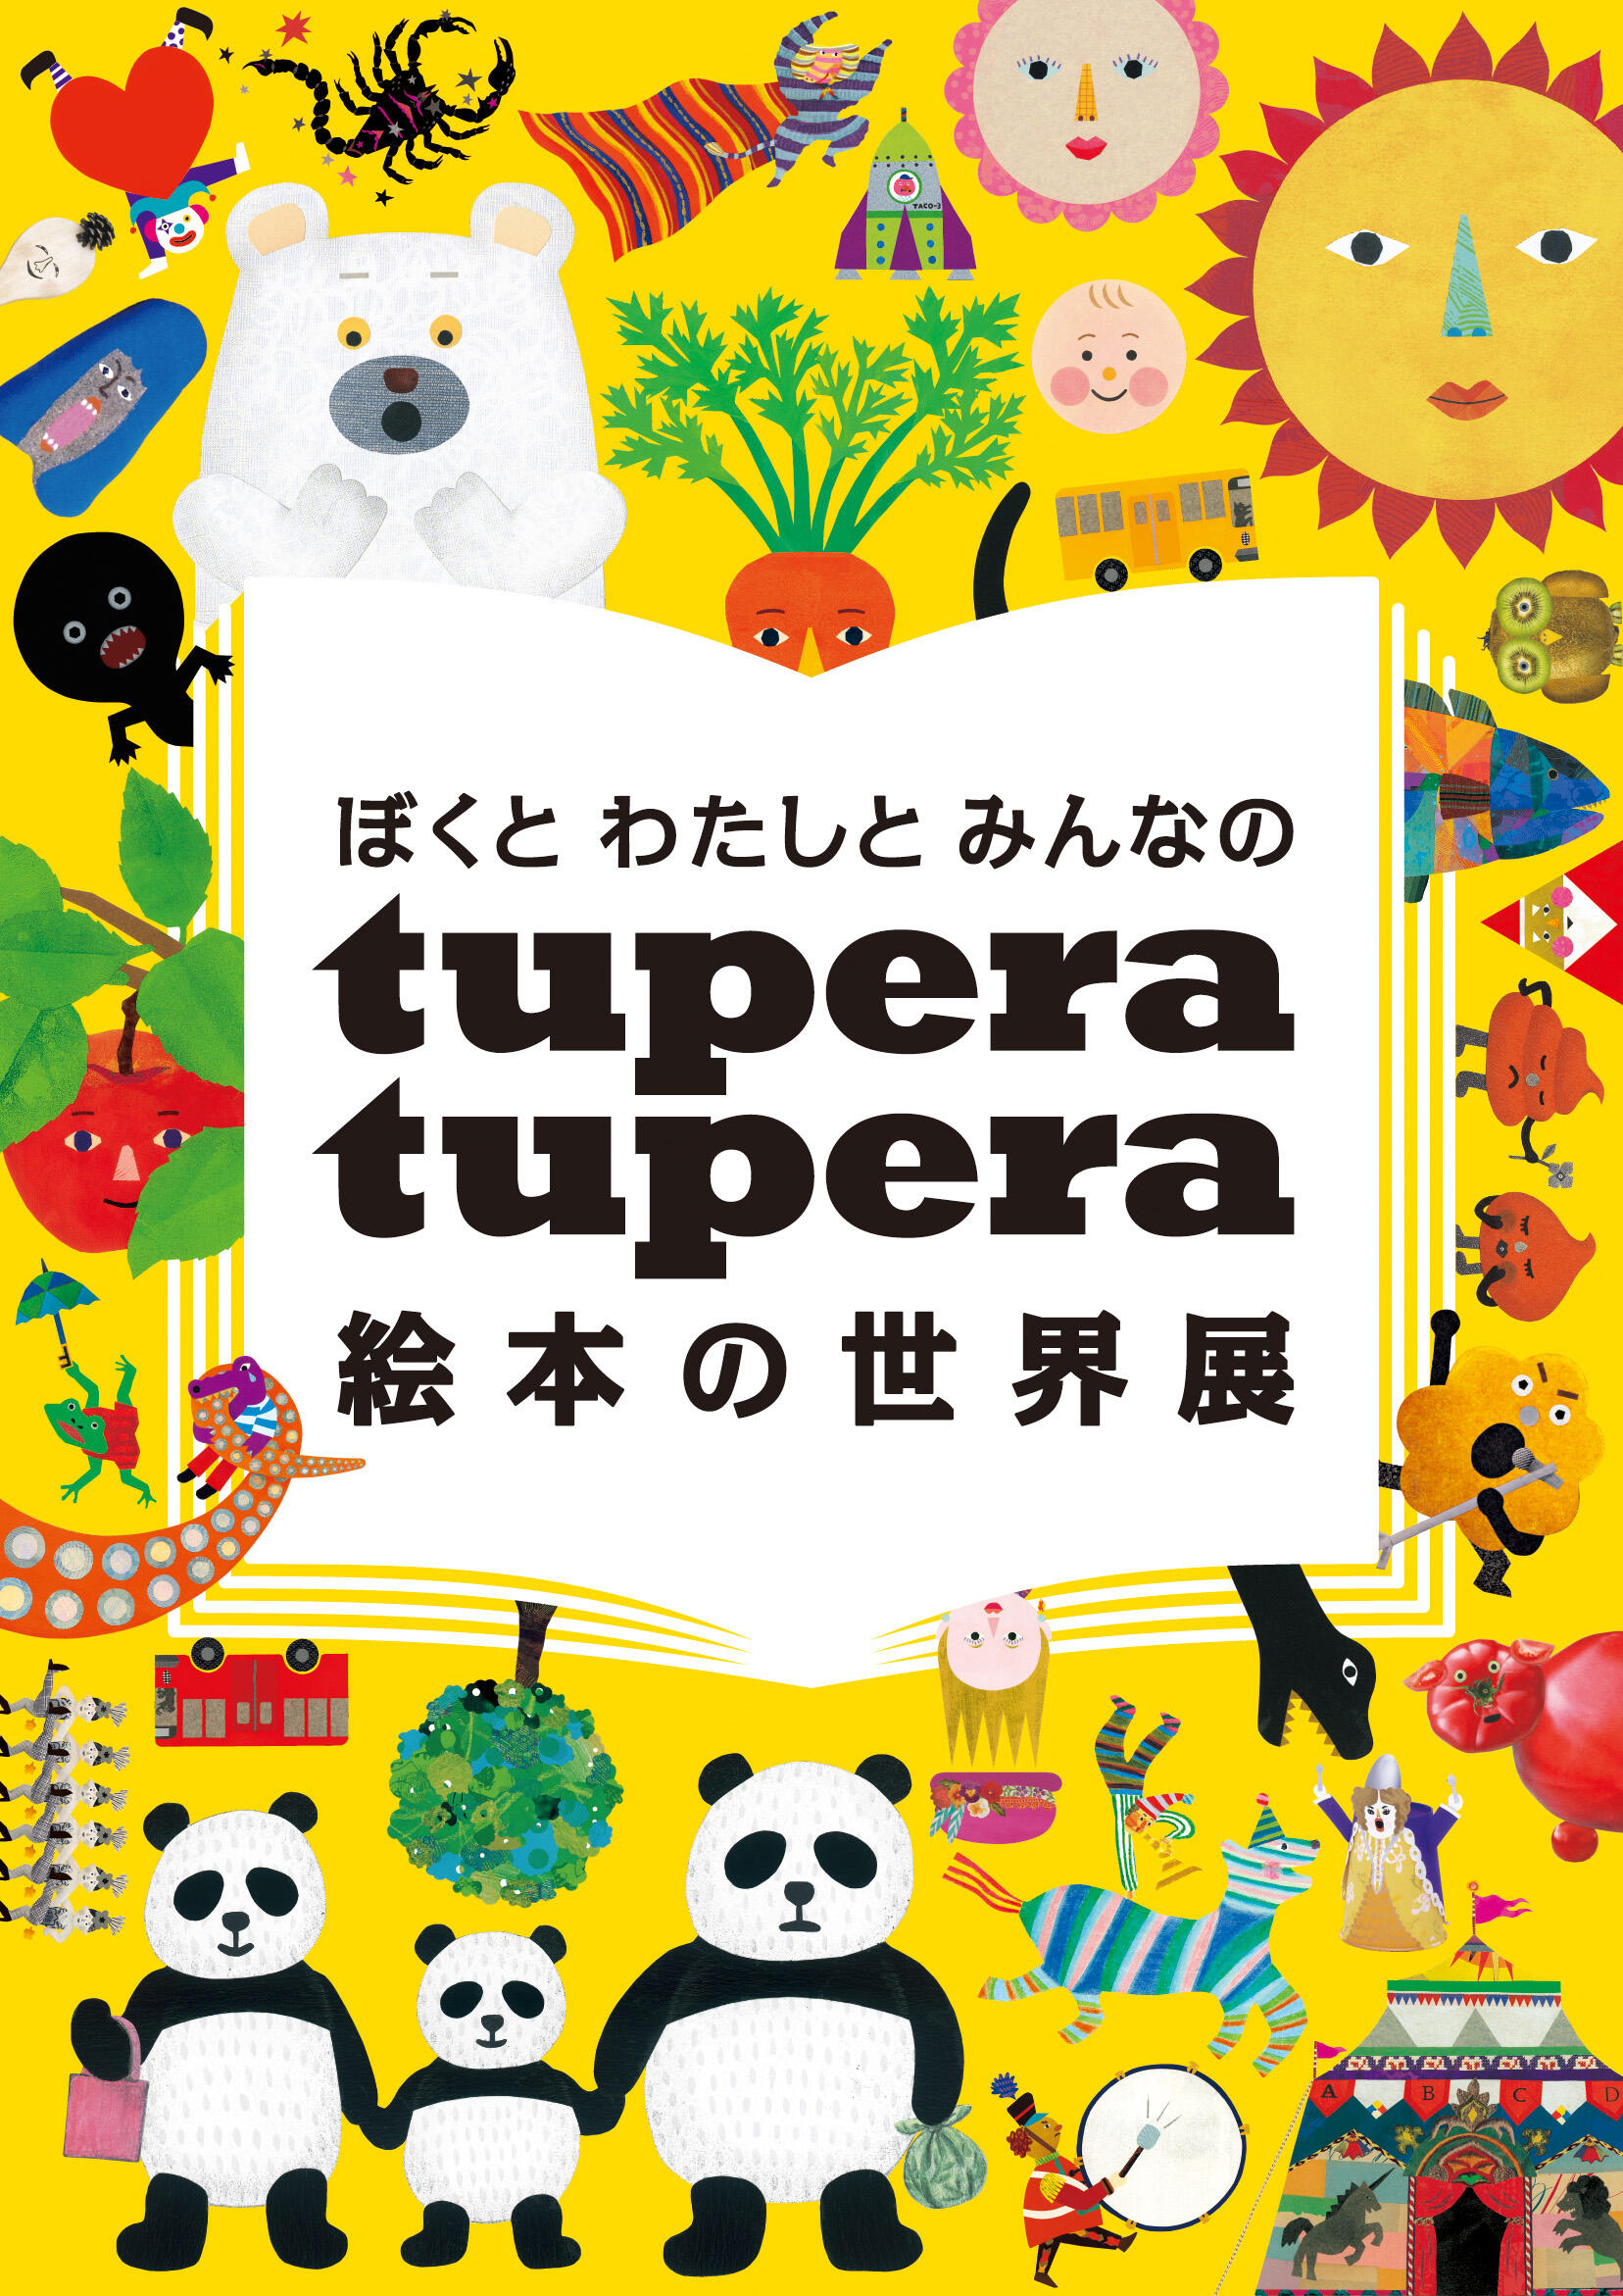 ぼくと わたしと みんなの Tupera Tupera 絵本の世界展 イベント 高知県立美術館